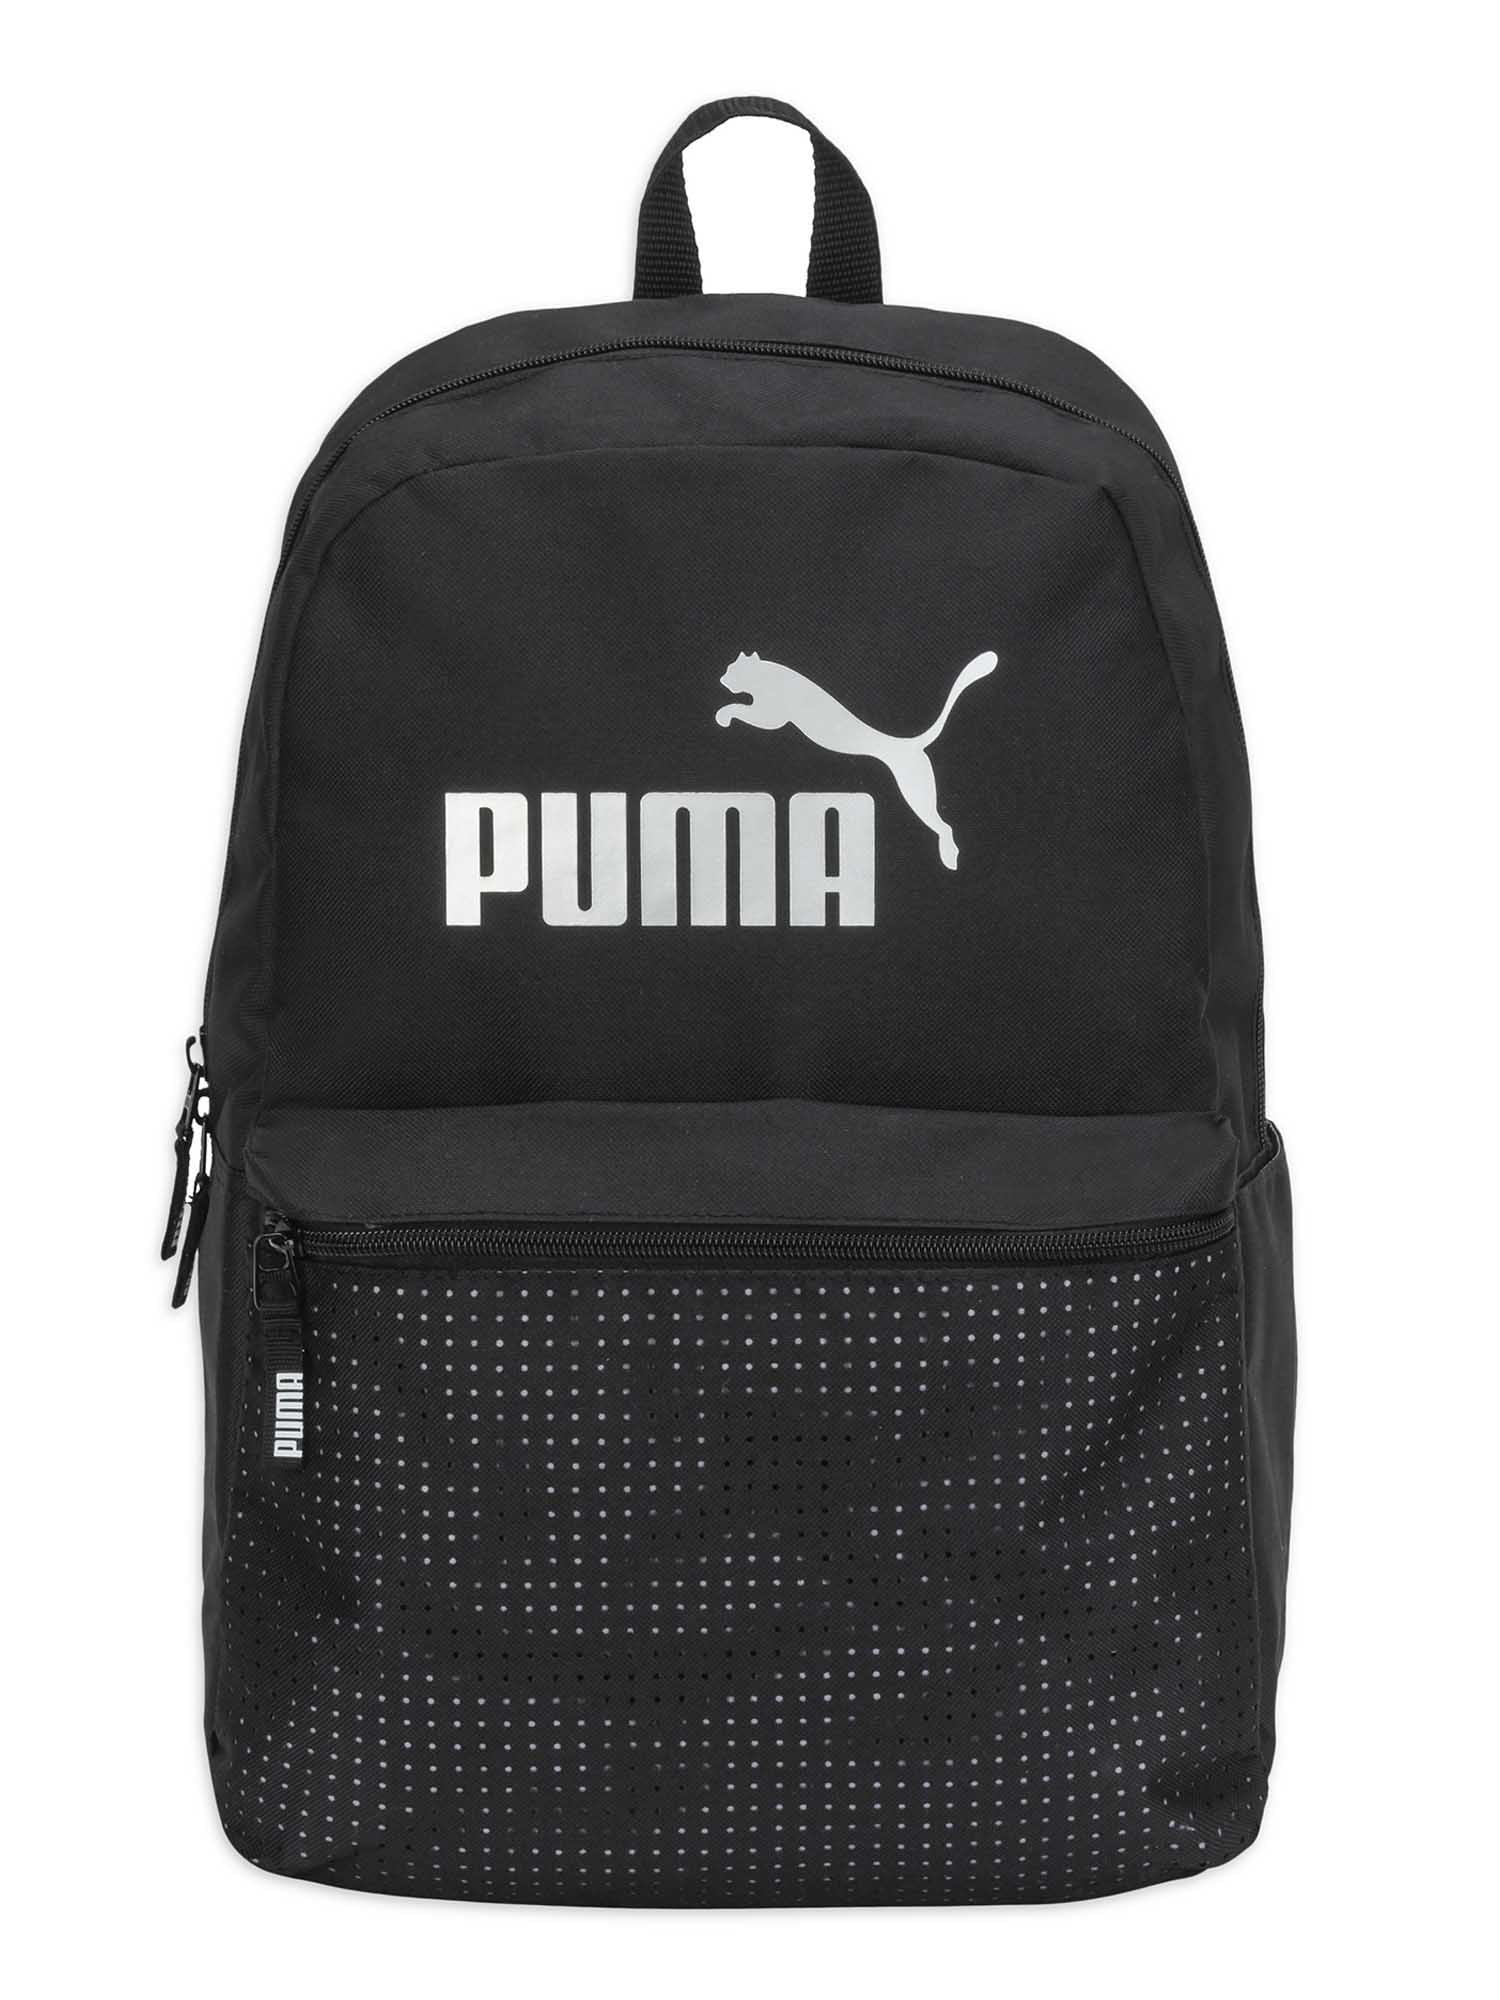 puma backpack silver